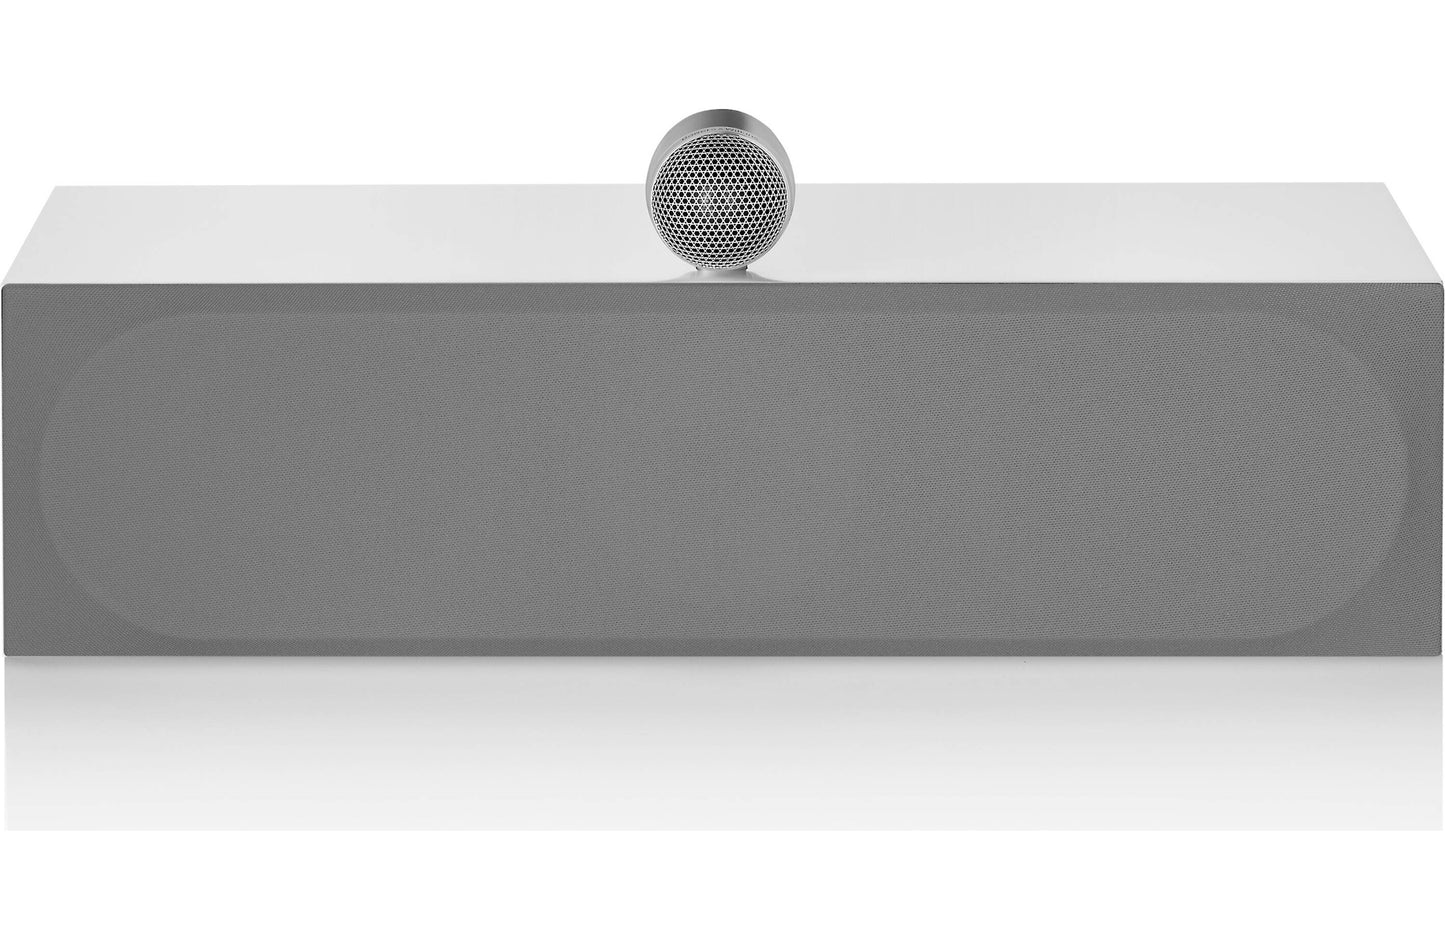 Bowers & Wilkins HTM71 S3 Center channel speaker - each - Gloss White